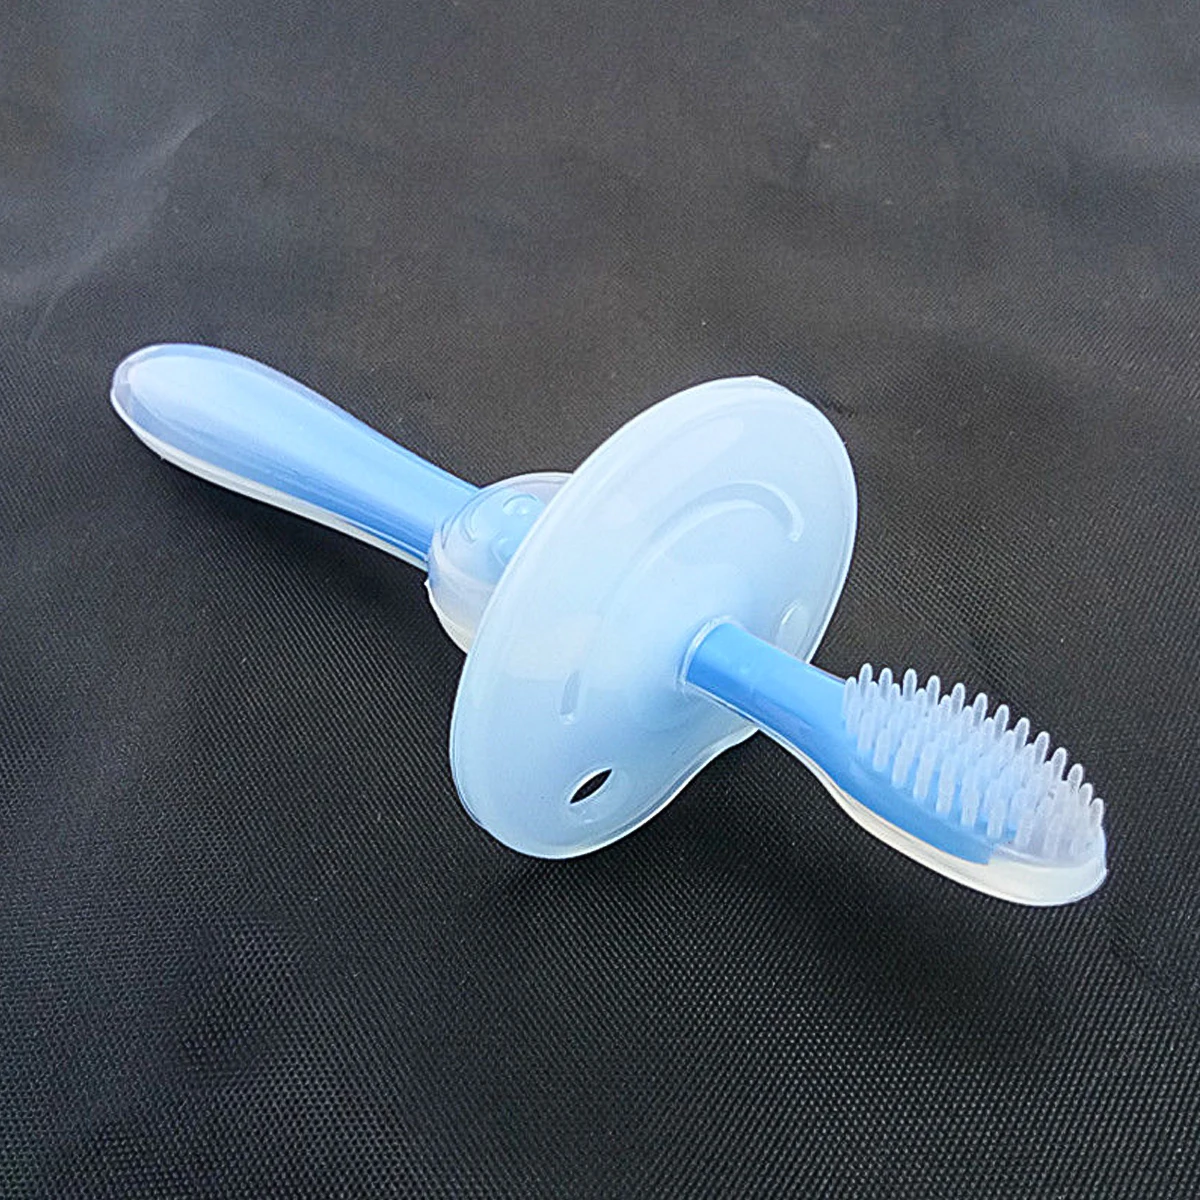 1 шт., детская мягкая силиконовая учебная зубная щетка, Детская щетка для ухода за зубами, зубная щетка, инструмент для прорезывания зубов